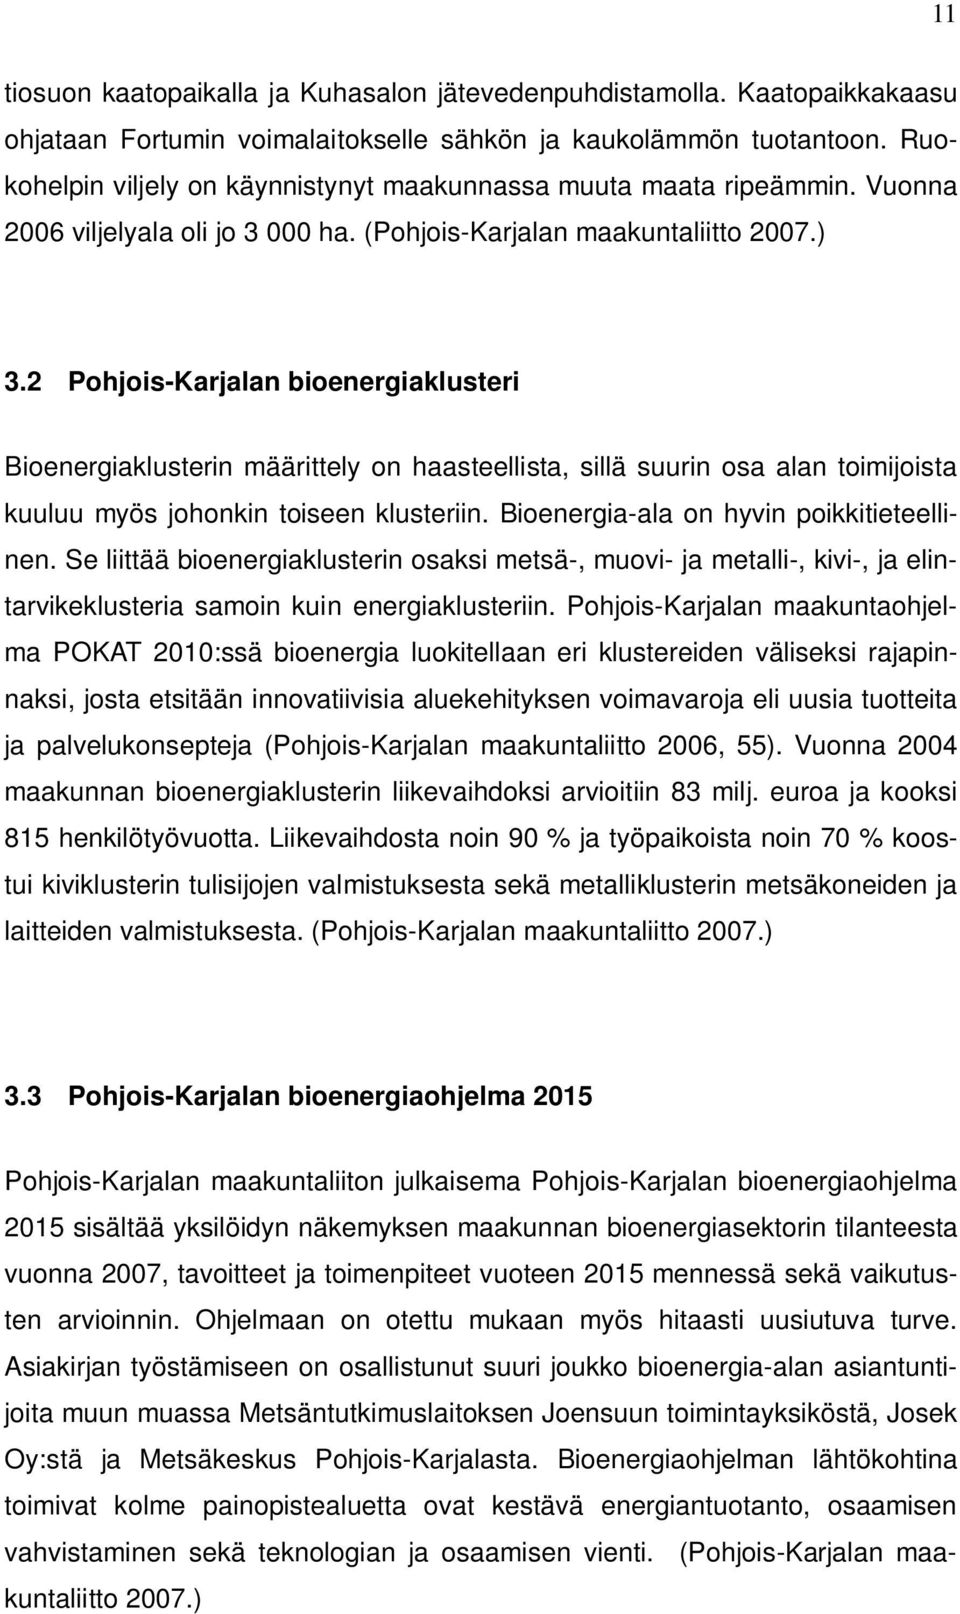 2 Pohjois-Karjalan bioenergiaklusteri Bioenergiaklusterin määrittely on haasteellista, sillä suurin osa alan toimijoista kuuluu myös johonkin toiseen klusteriin.